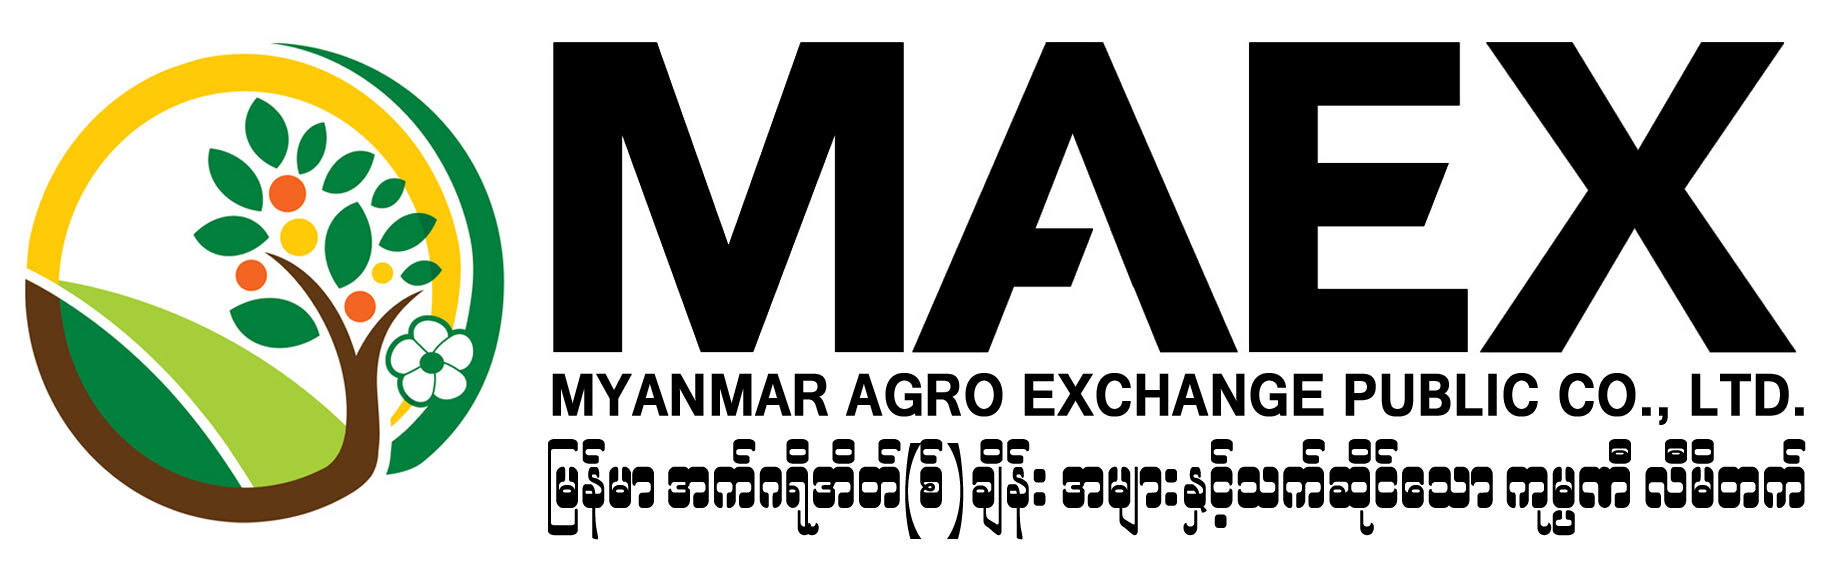 မြန်မာအက်ဂရိုအိတ်(စ်)ချိန်း အများနှင့်သက်ဆိုင်သော ကုမ္ပဏီလီမိတက်